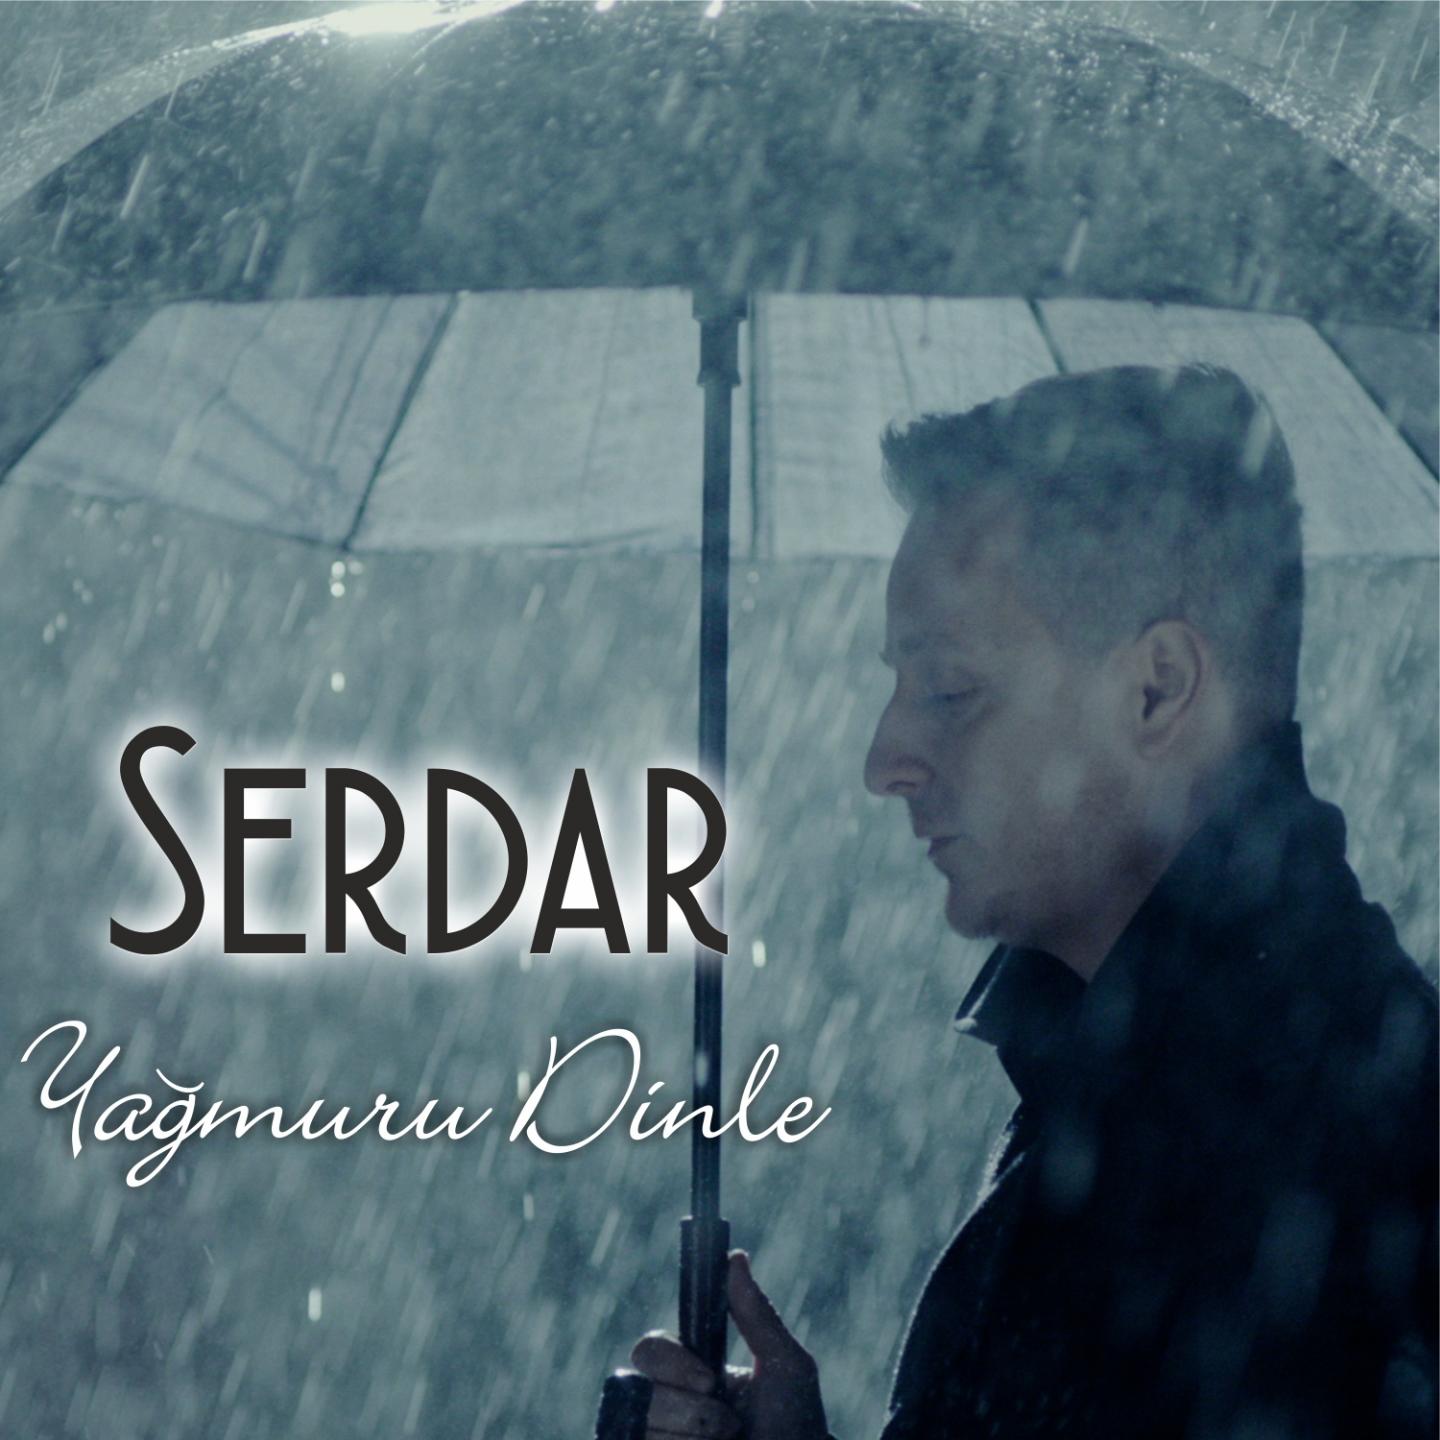 Постер альбома Yağmuru Dinle